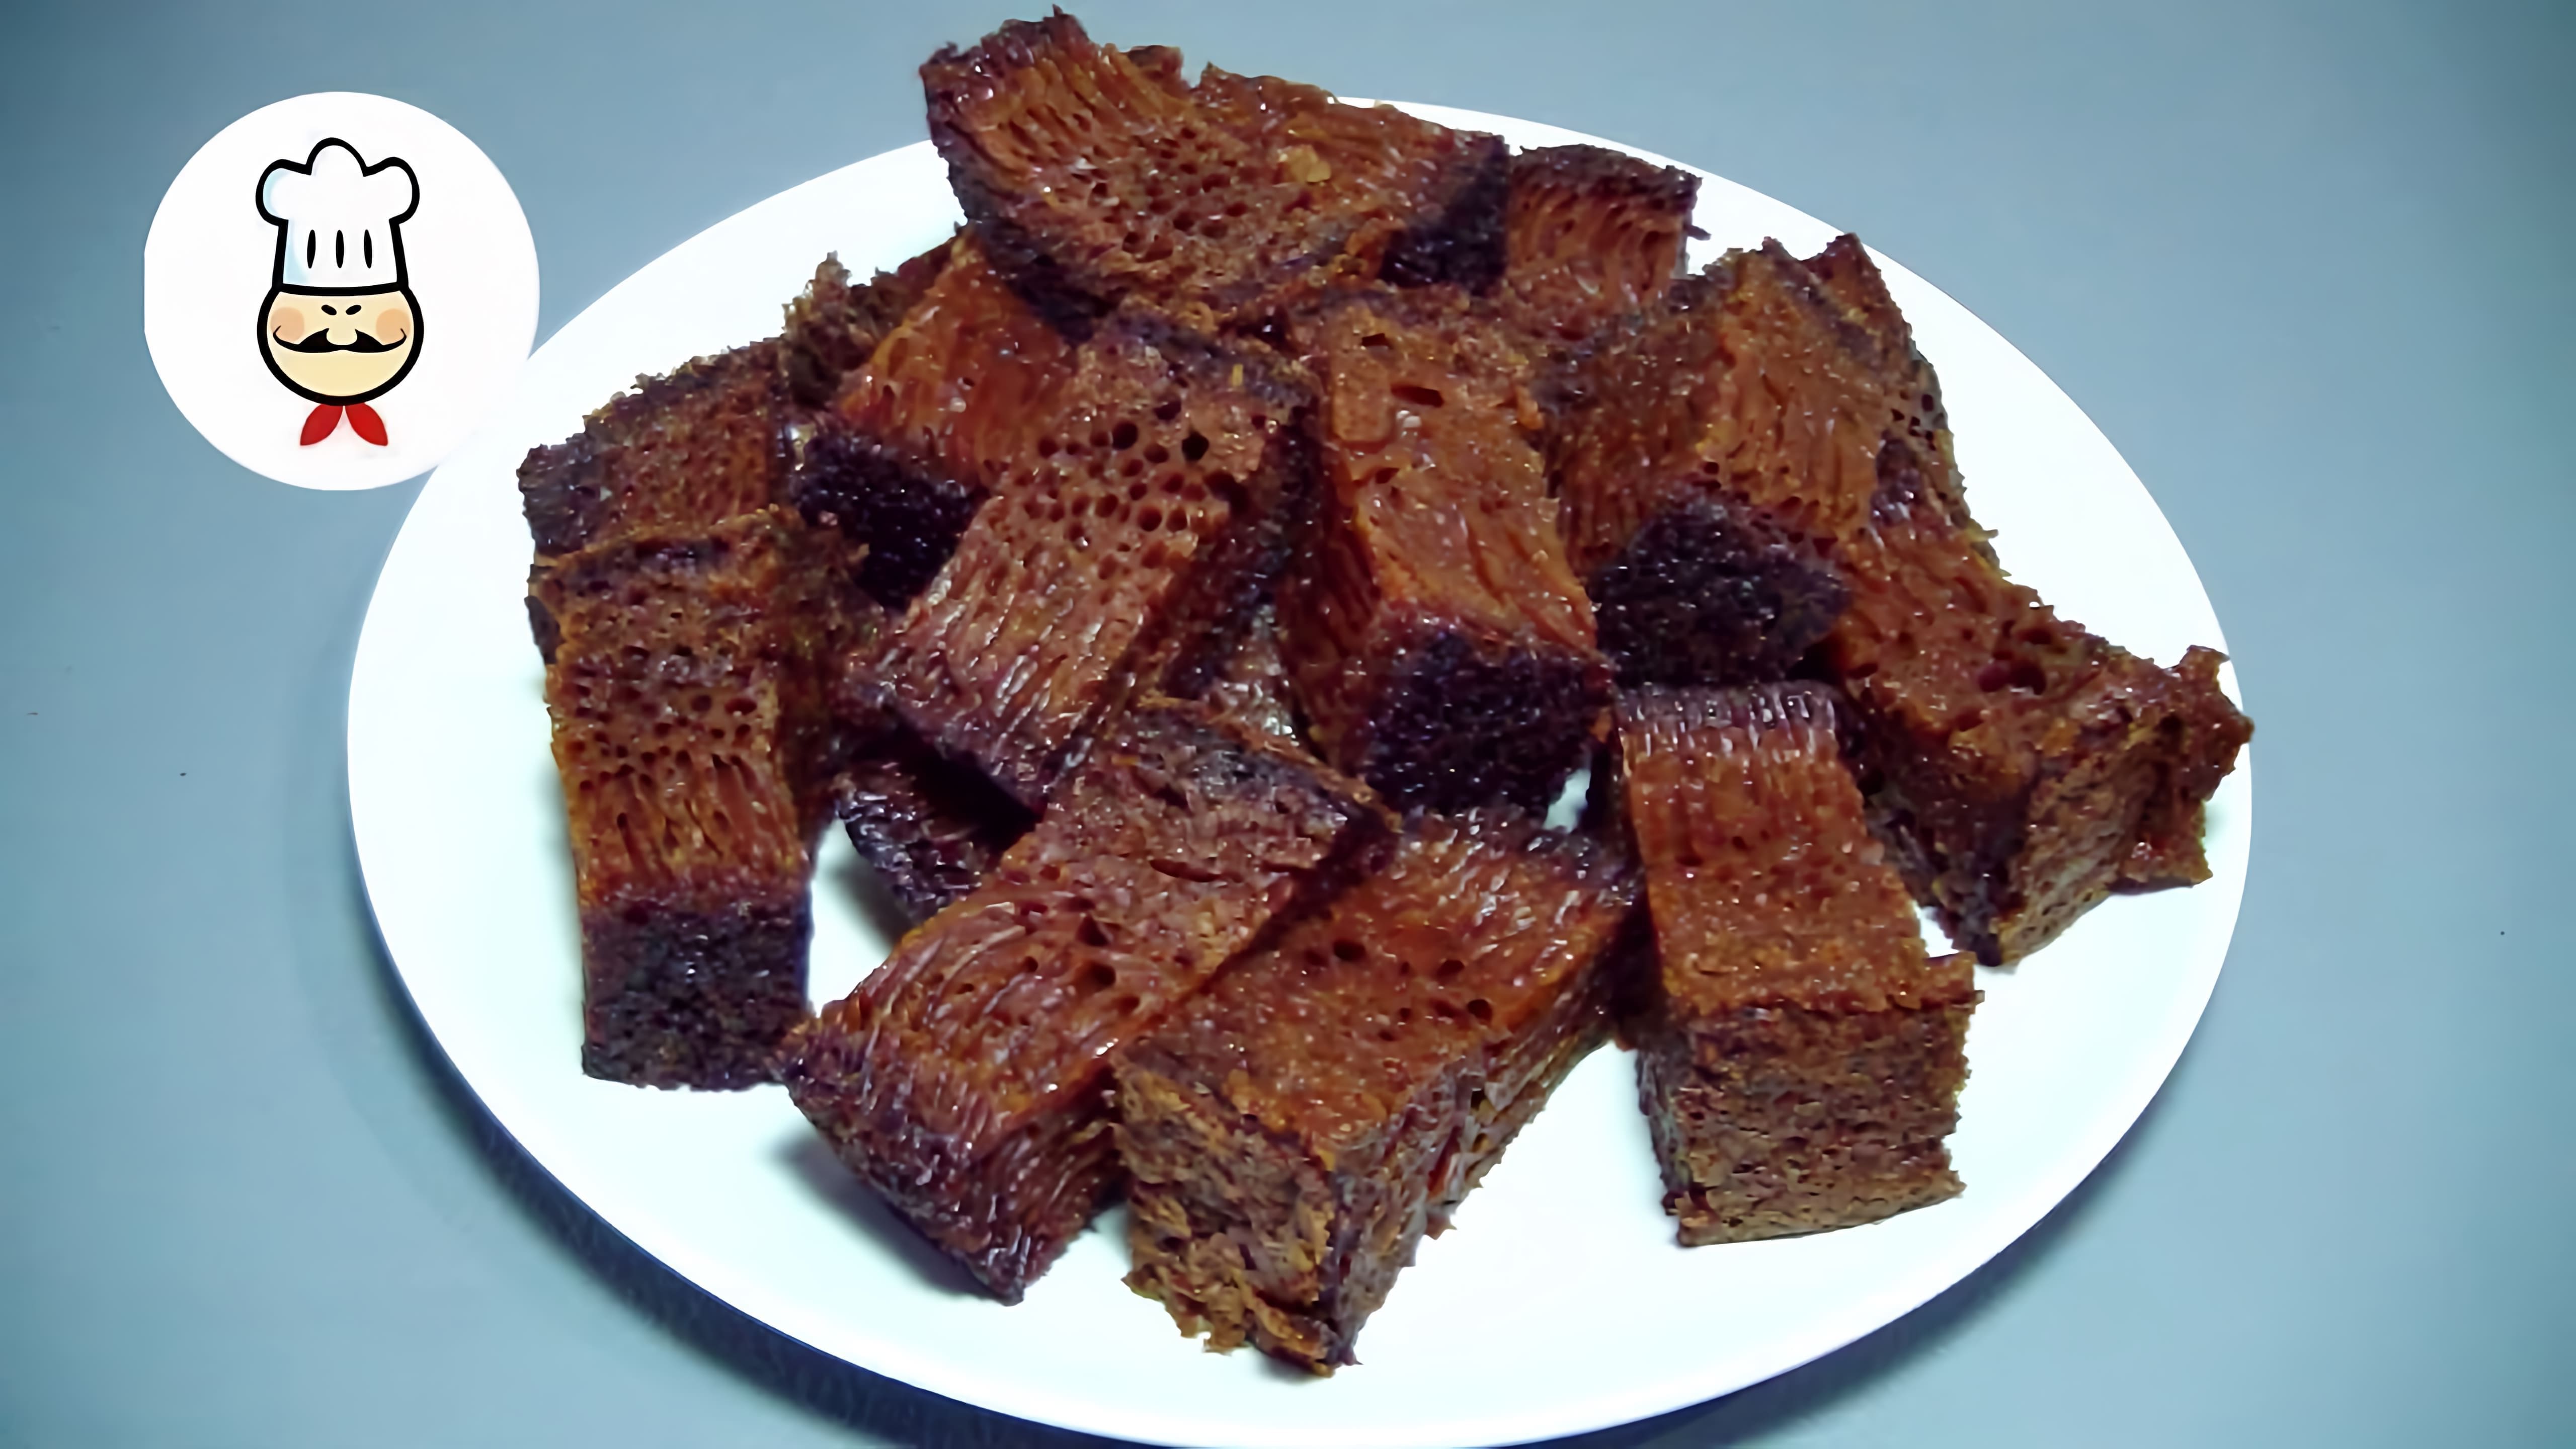 В этом видео-ролике вы увидите рецепт приготовления десерта "Черная бабка" - традиционного блюда молдавской кухни